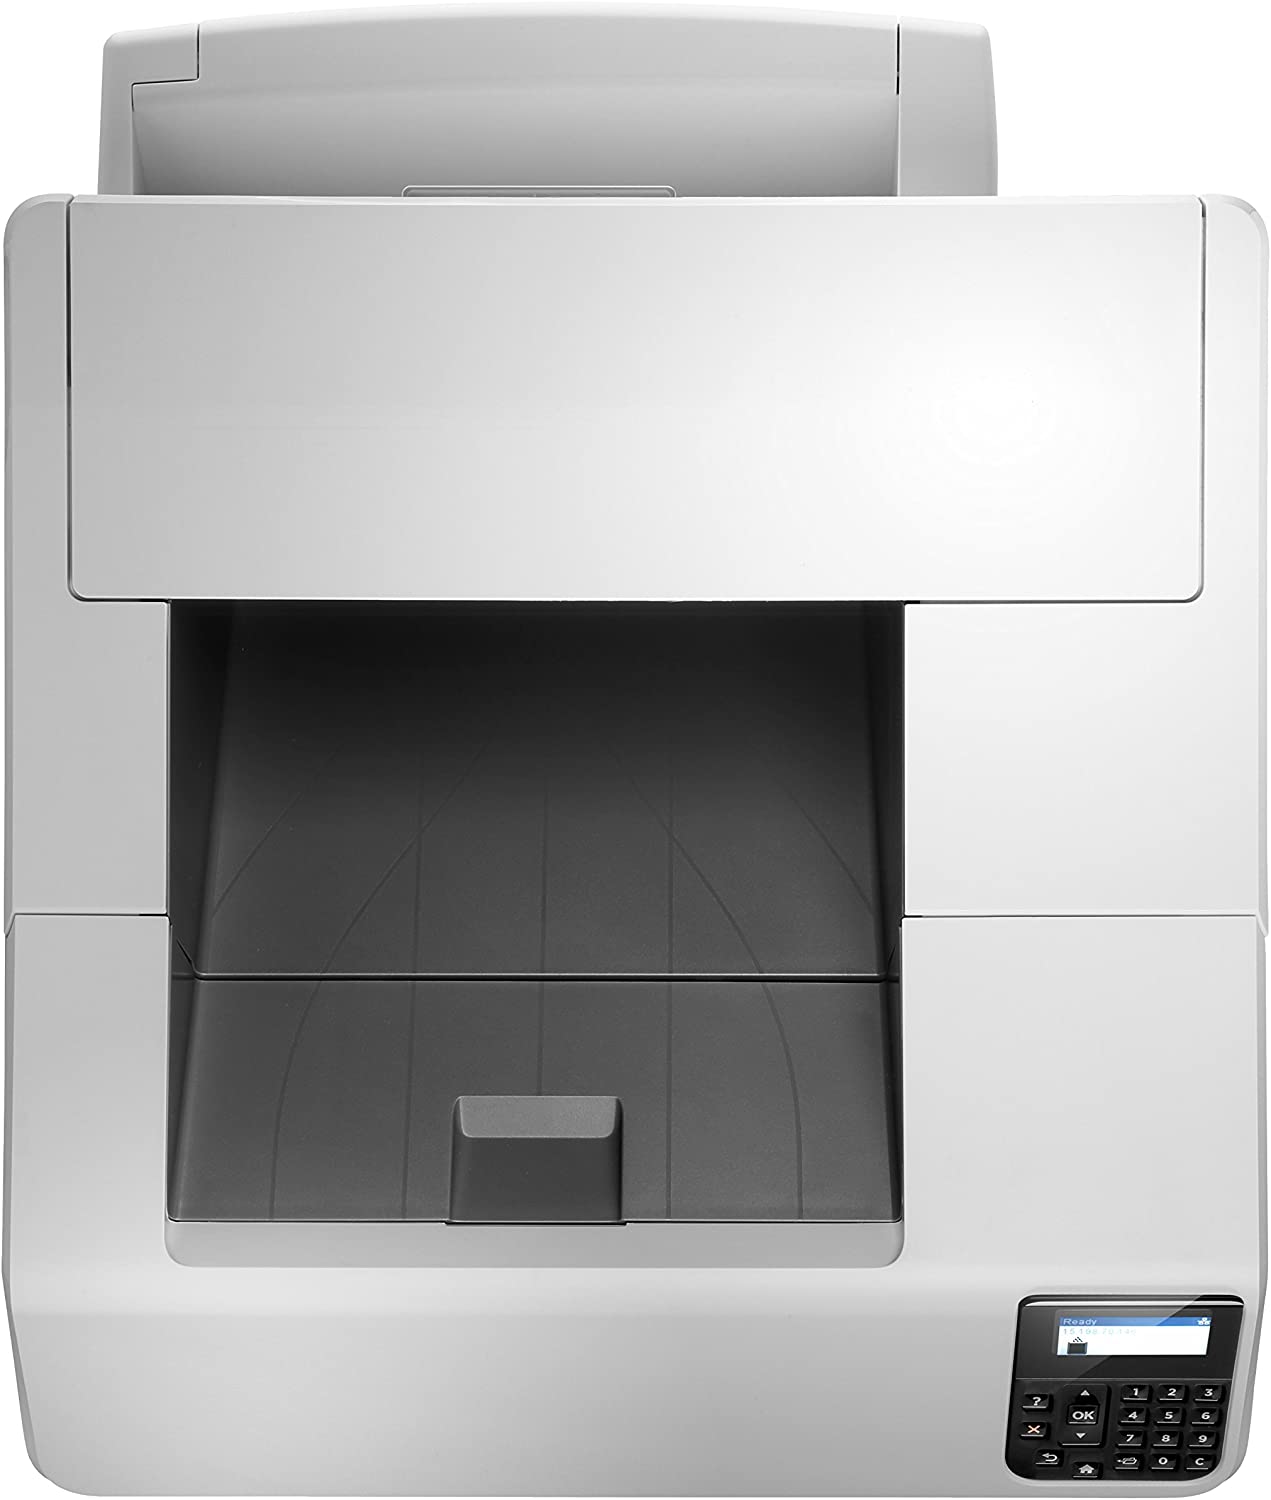 HP LaserJet Enterprise M605dn Monochrome Laser Printer B/W A4 Duplex Duplex Network 55 ppm